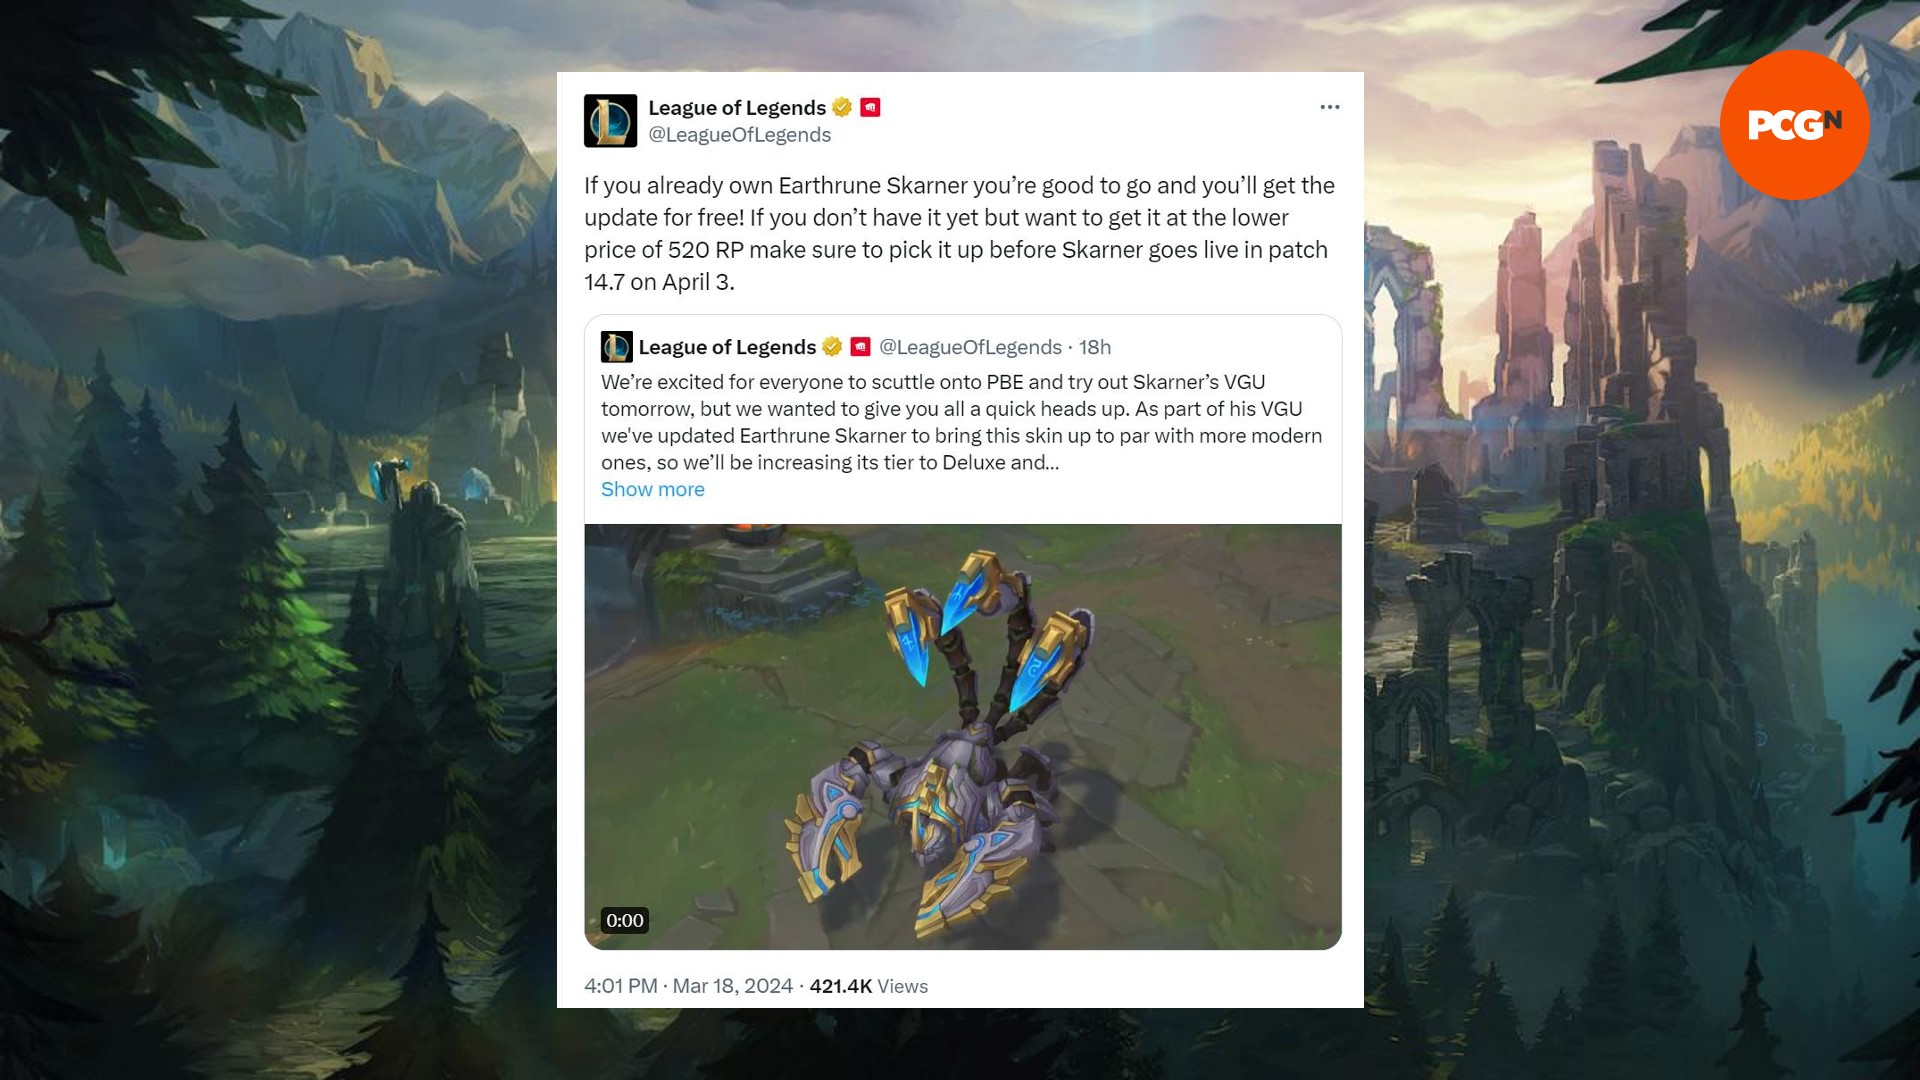 Publicación de AX/Twitter de la cuenta de League of Legends que analiza el precio de Earthrune Skarner después de su VGU